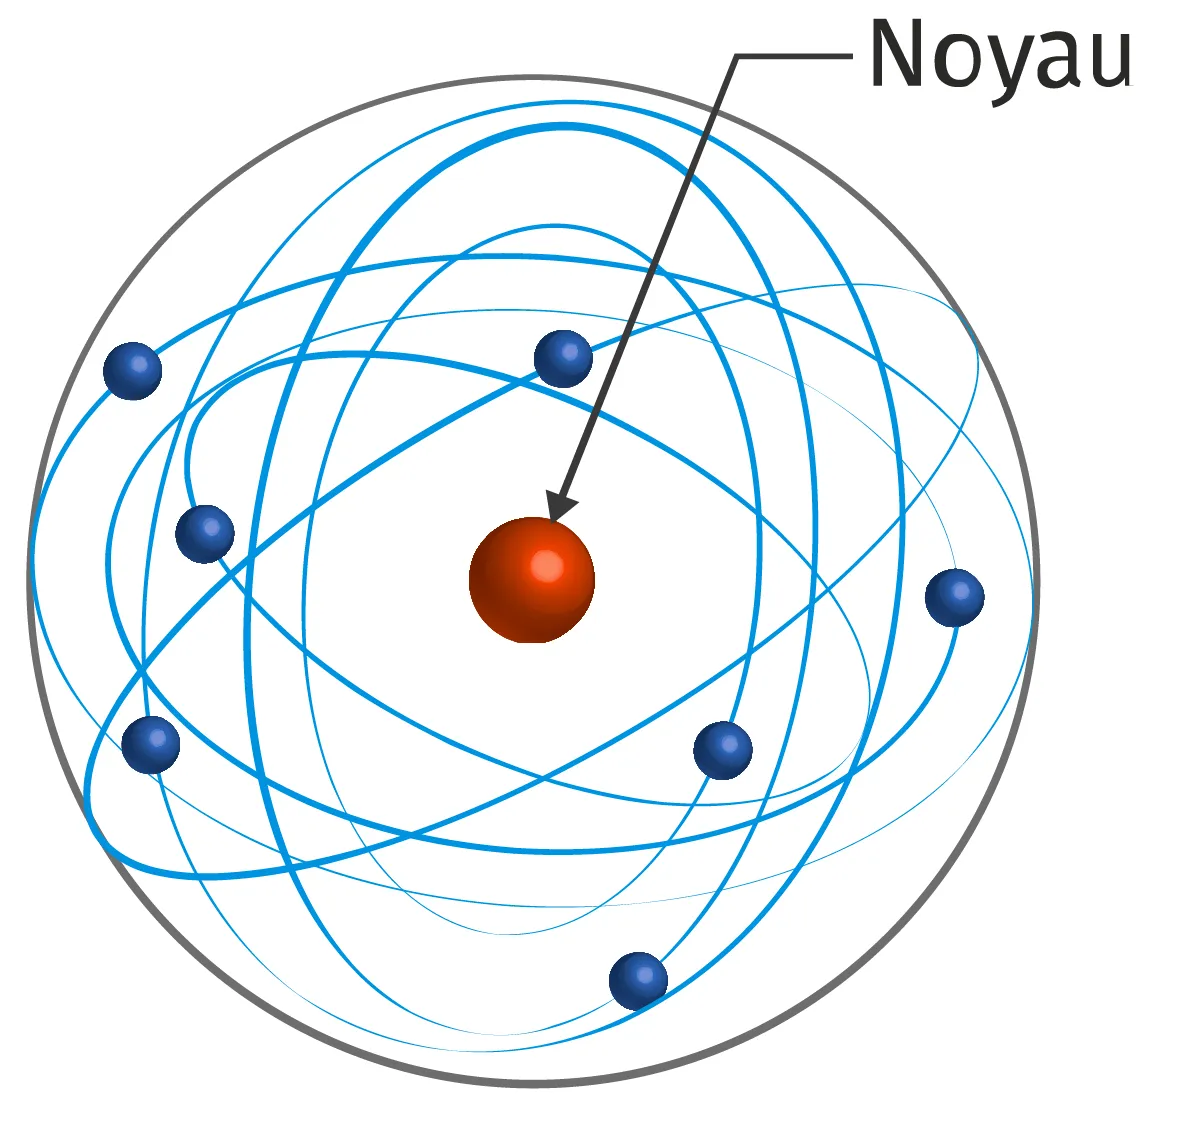 Noyau positif avec des électrons qui orbitent autour. Entre les deux, du vide